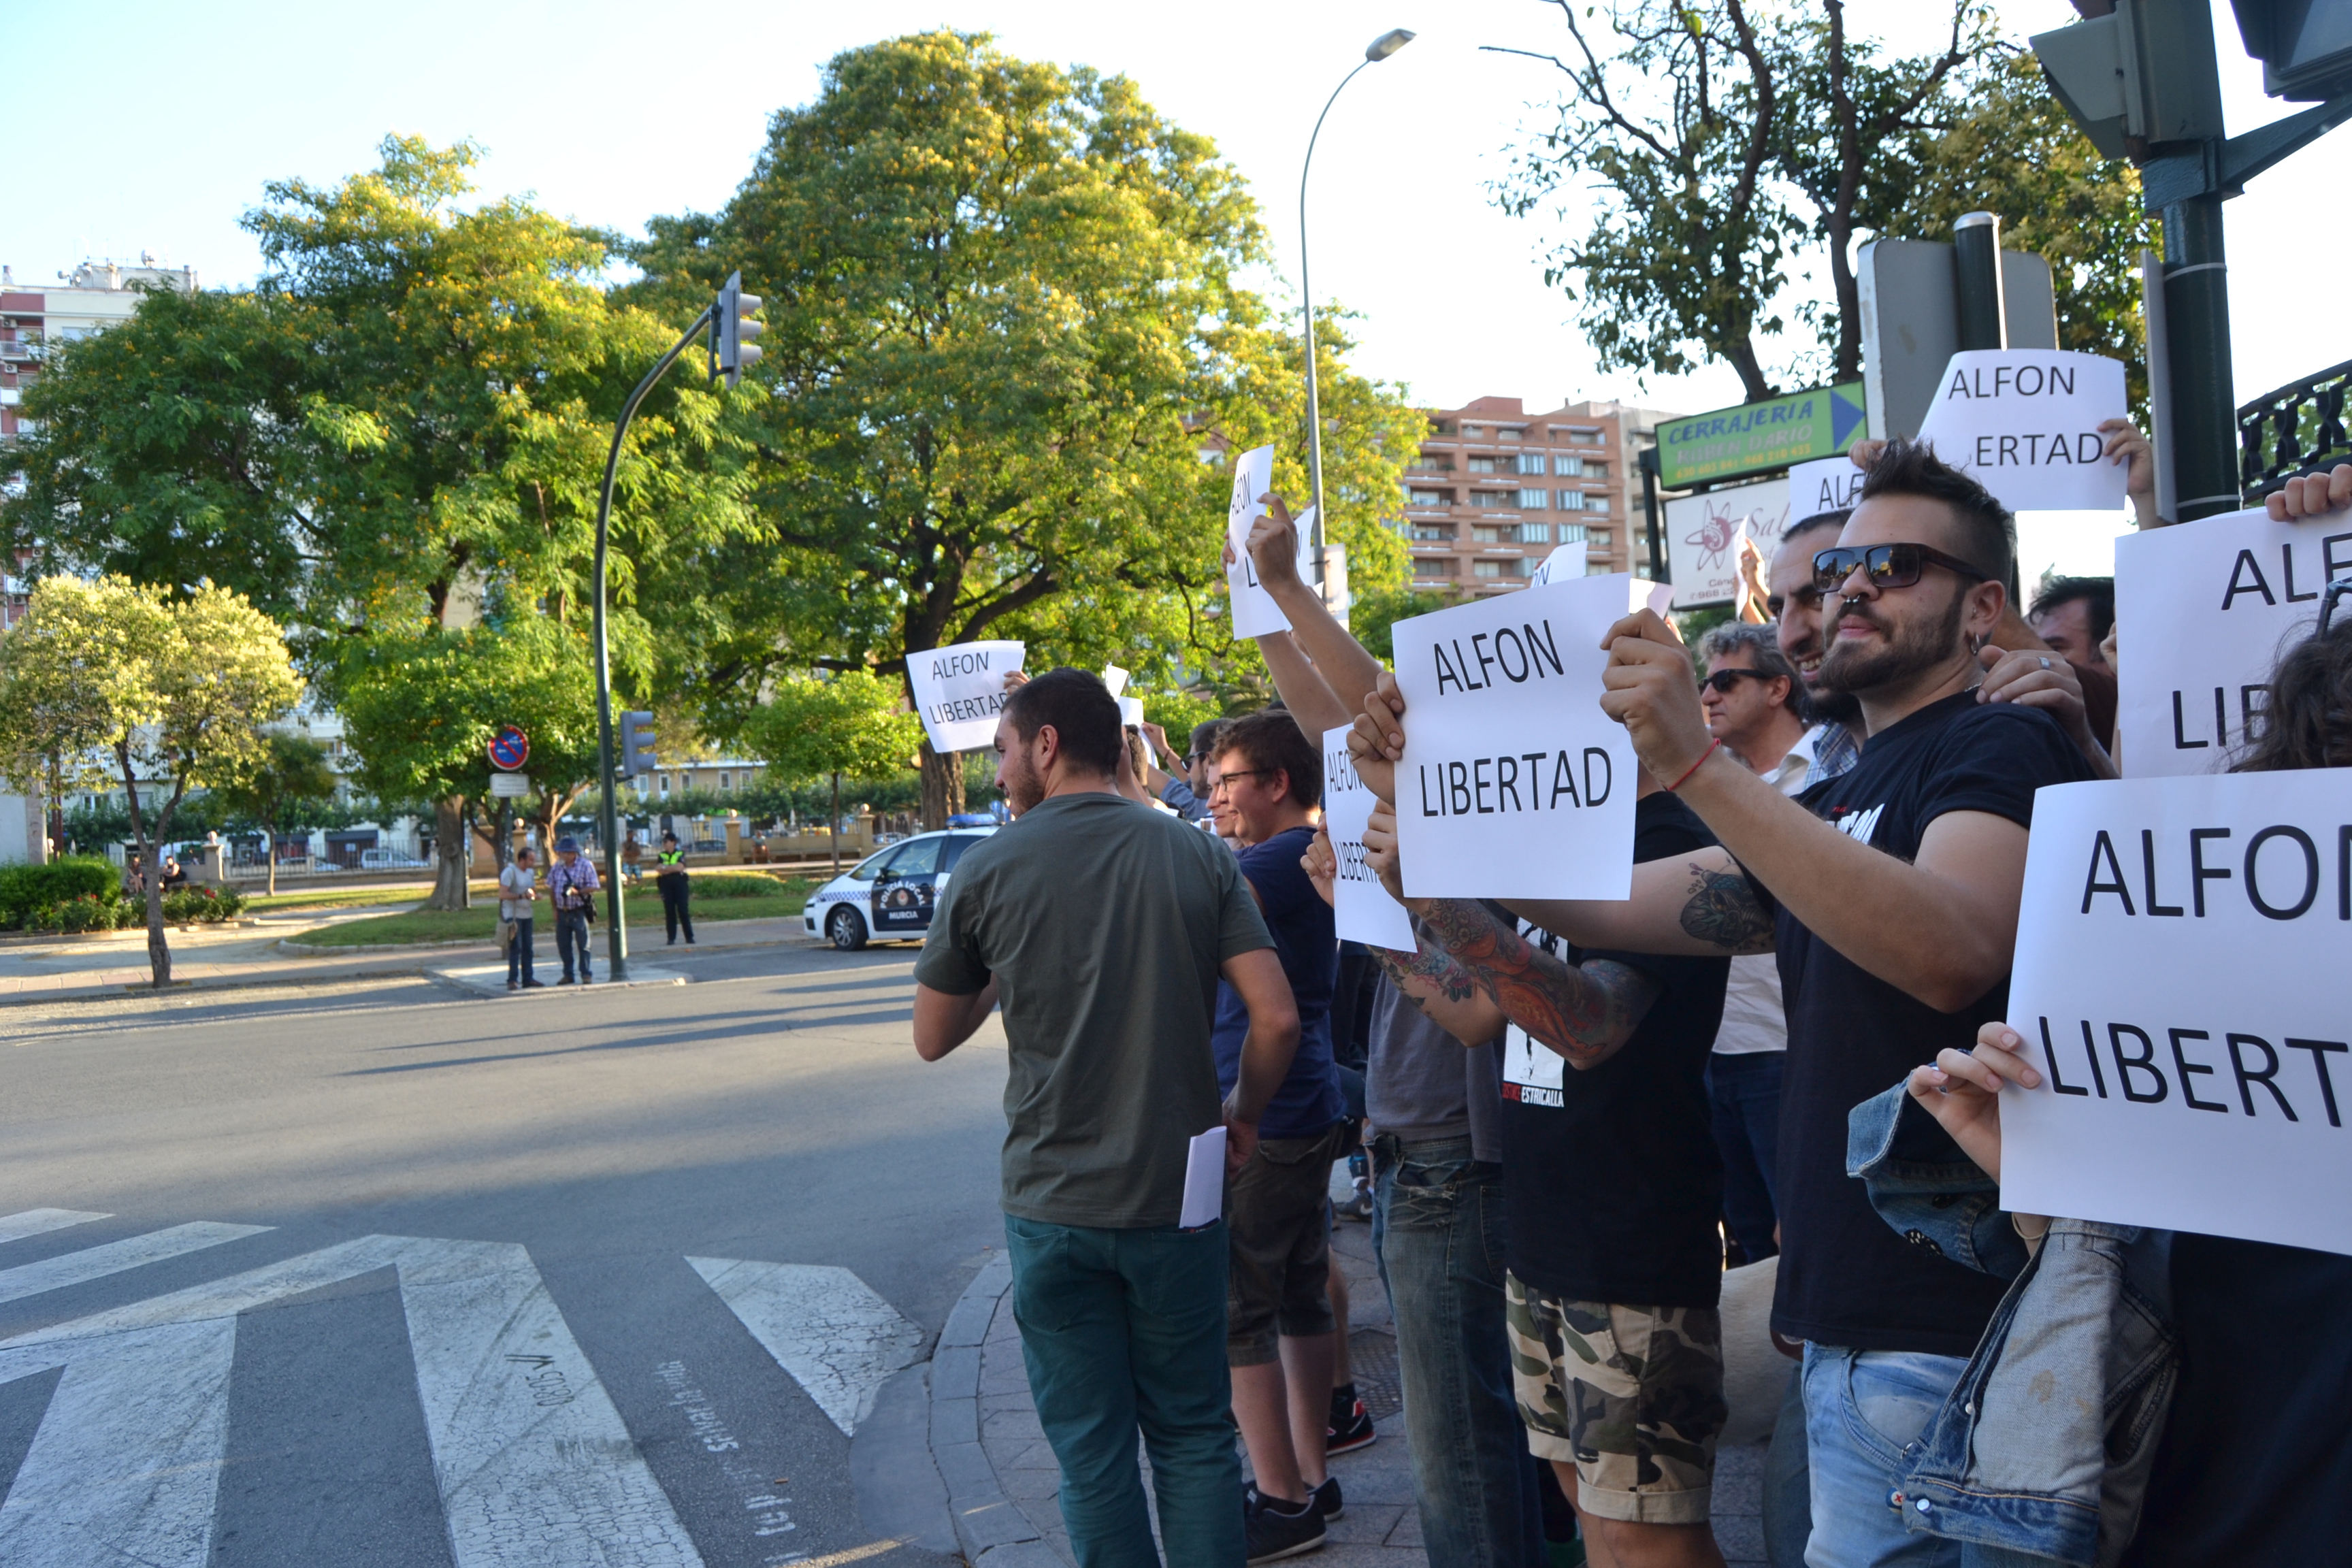 Murcia, Los Garres y manifestación de apoyo #Alfonlibertad 18/06/2015. Fotos de #zeroanodino para #URBANARTIMAÑA